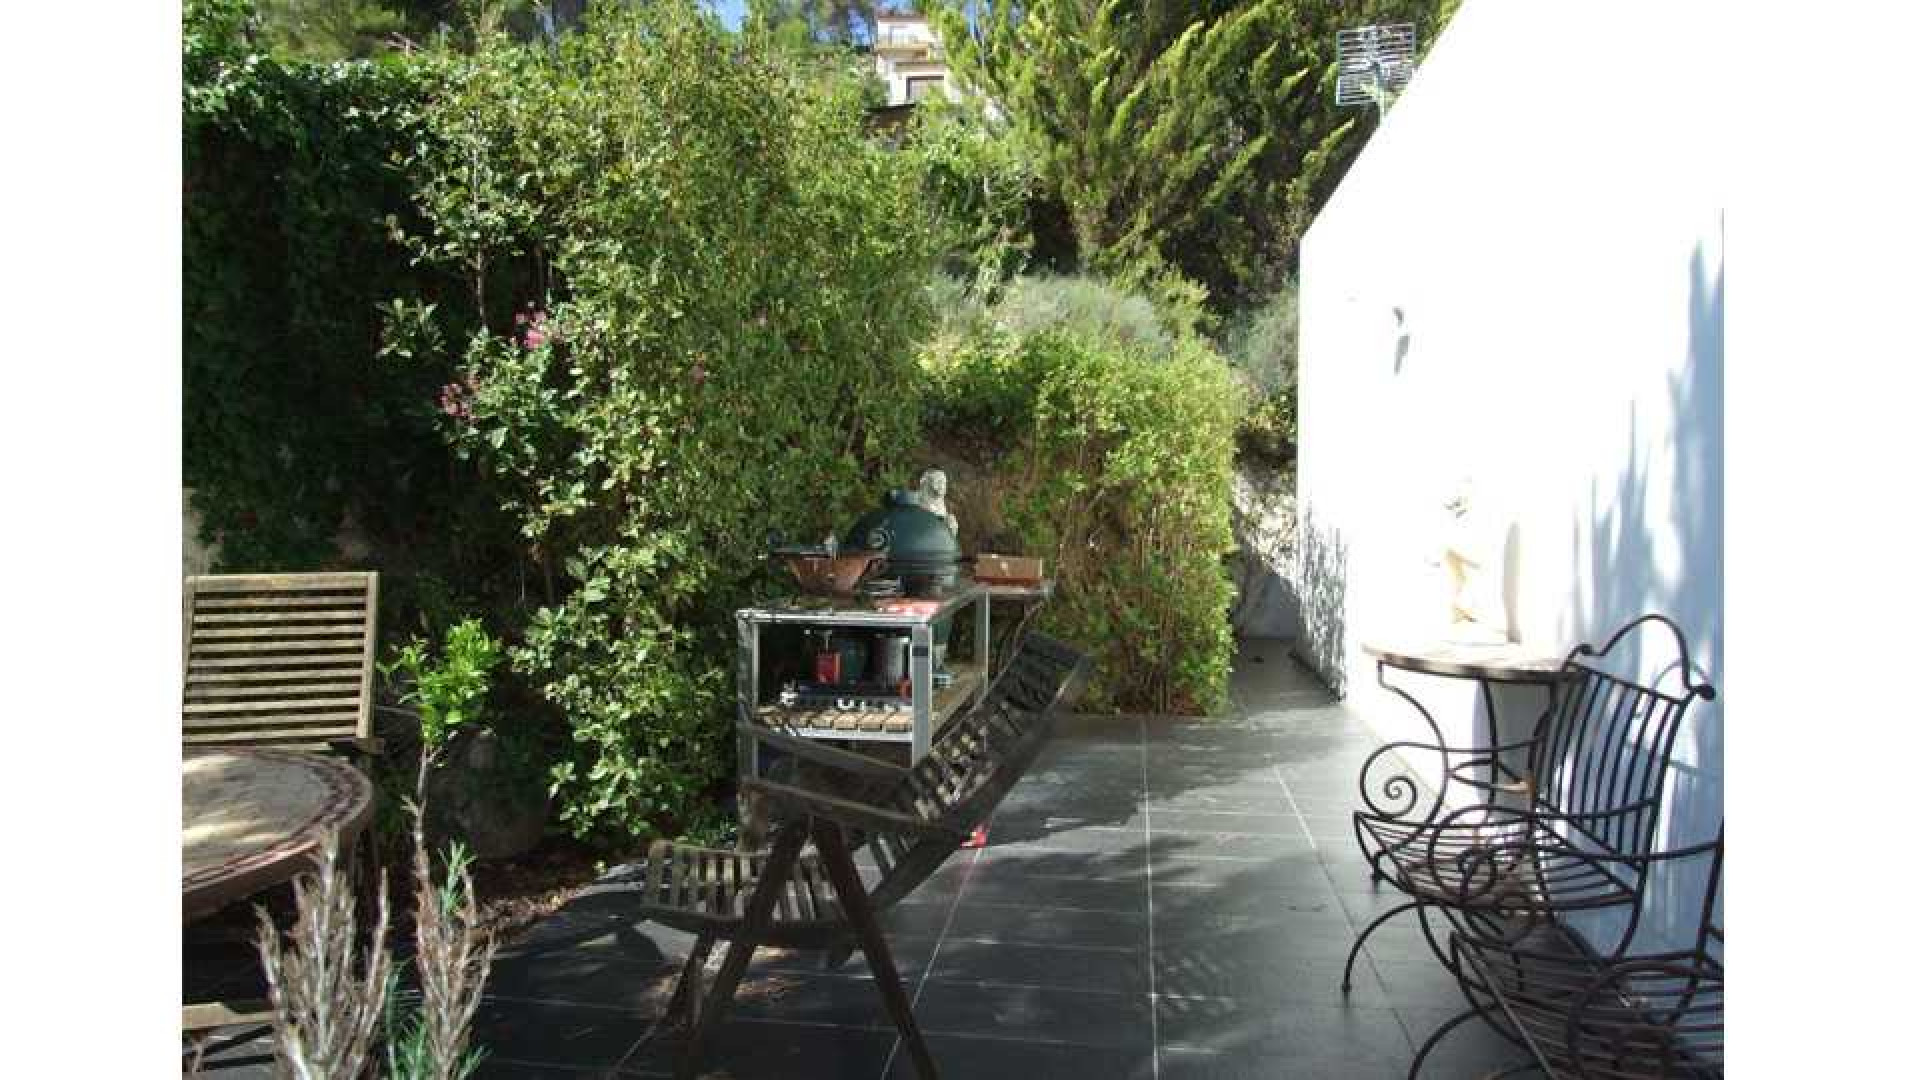 Tuinman Rob Verlinden geeft de moed op en haalt Spaanse villa uit de verkoop. Zie foto's 6